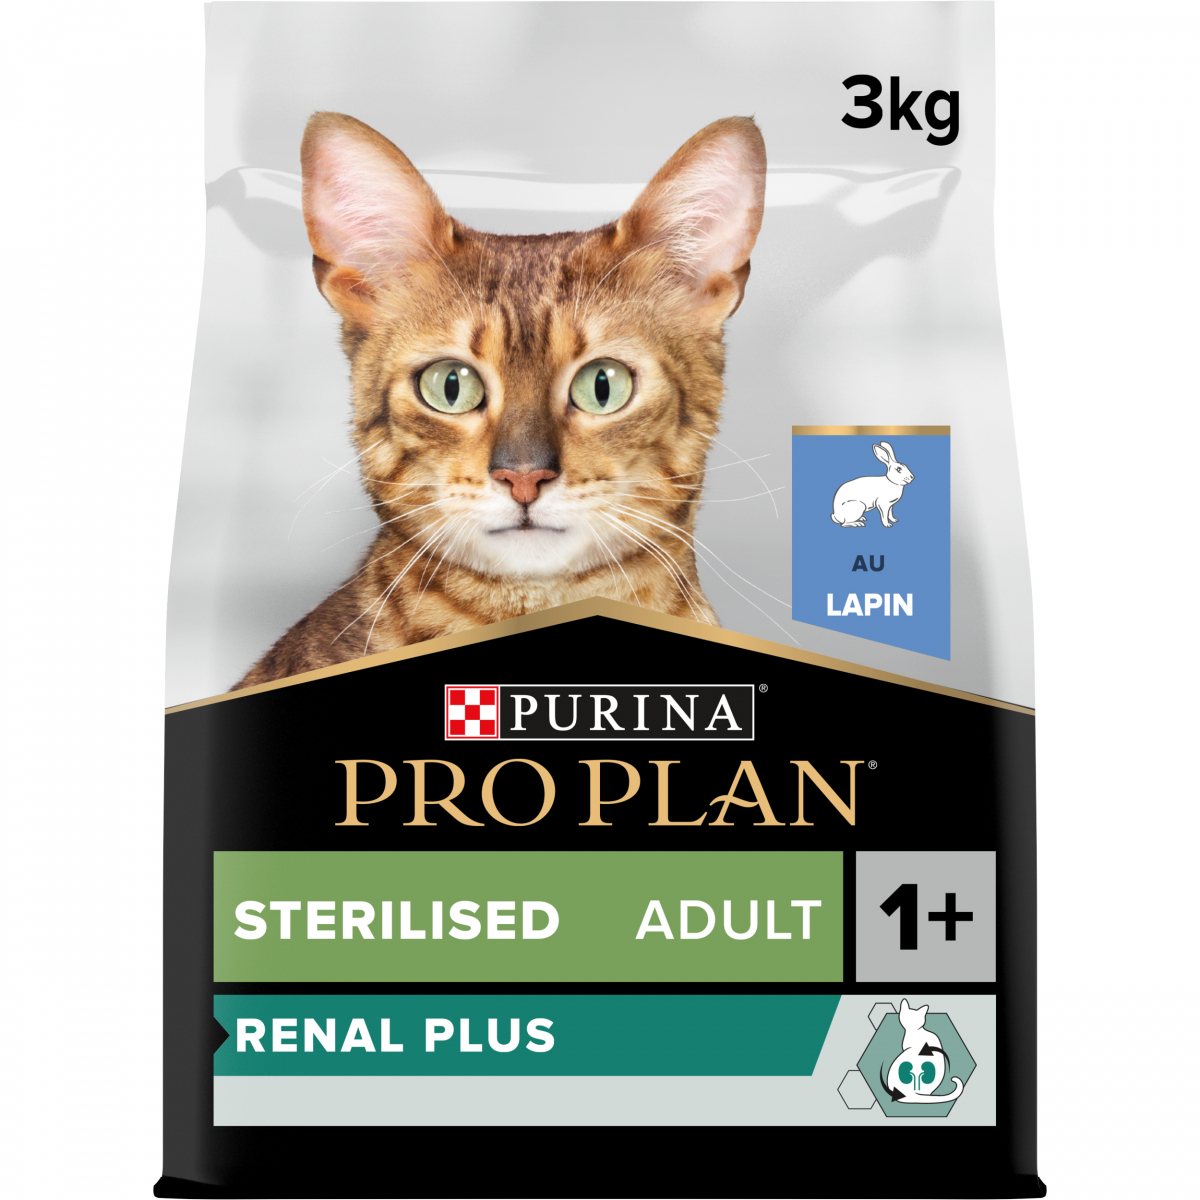 Pro Plan Sterilised Adult RENAL PLUS au lapin pour chat